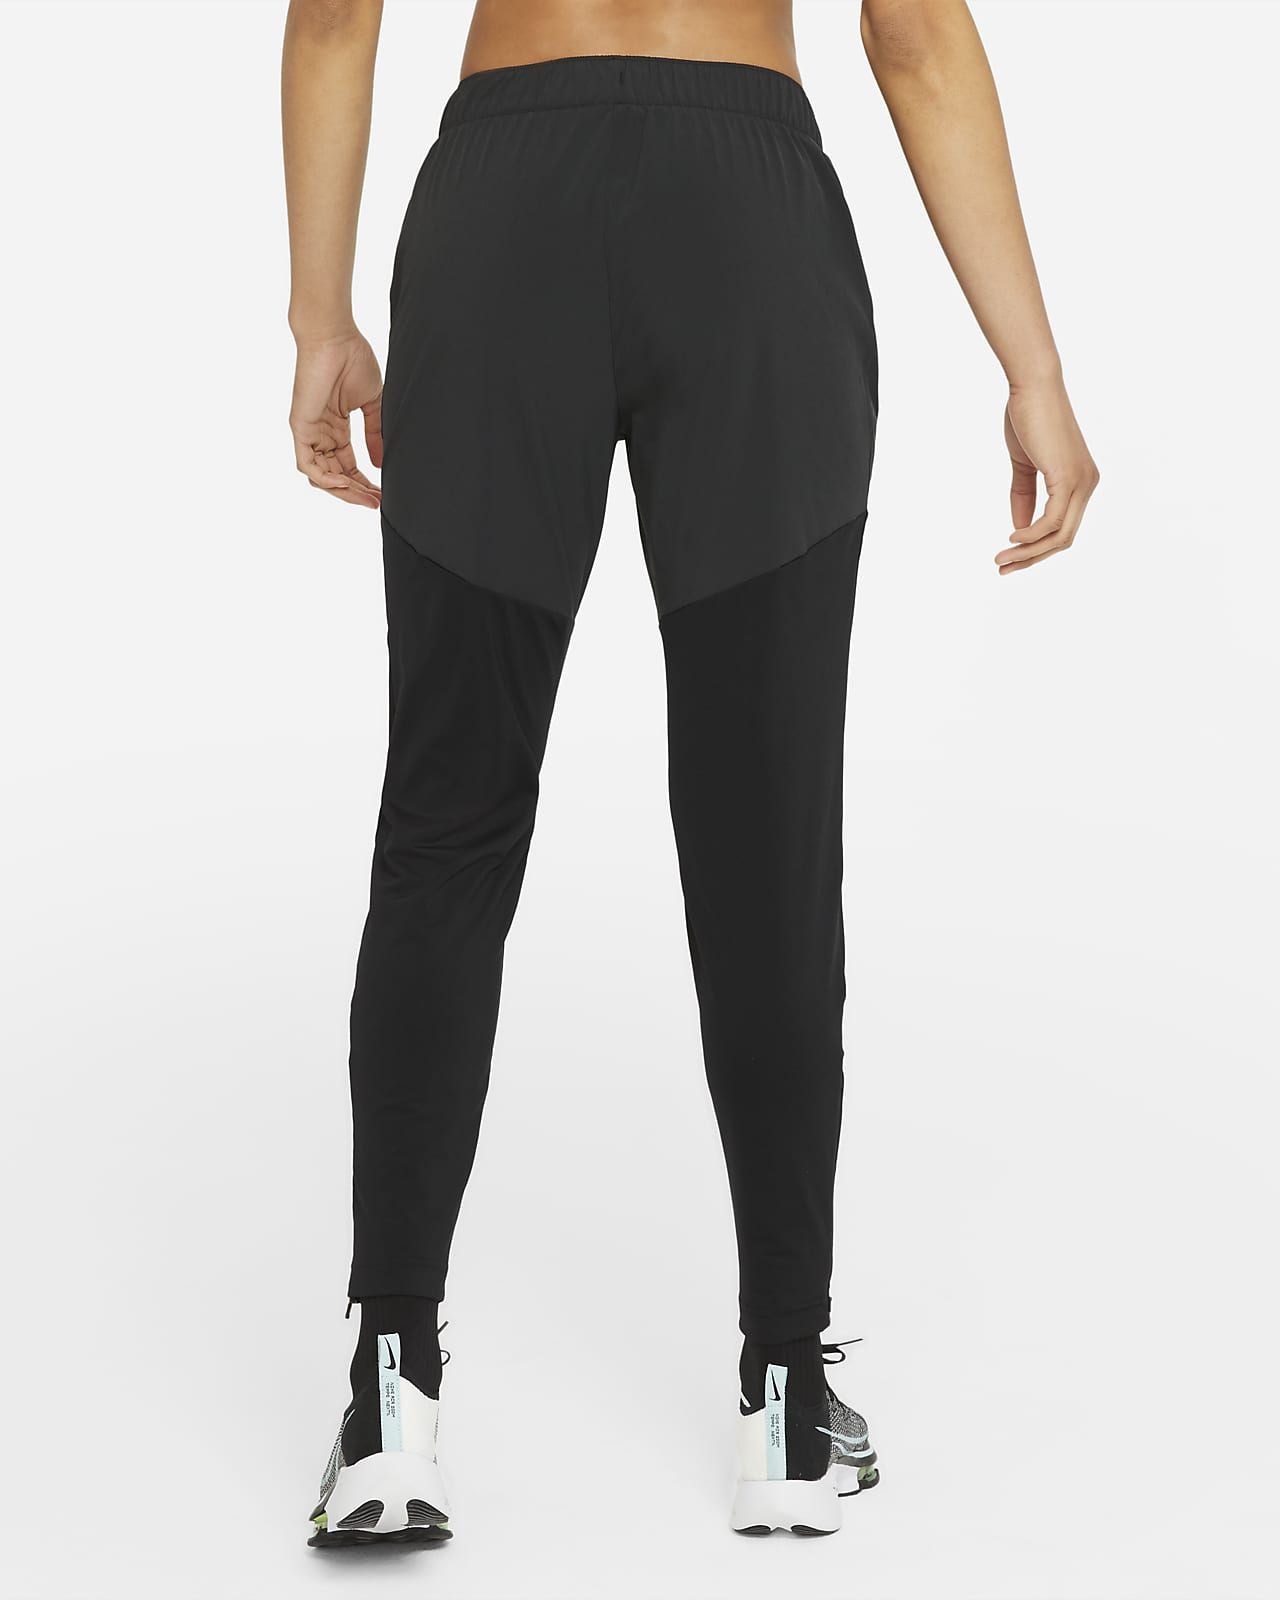 Pantalon de running d'échauffement 7/8 taille mi-haute Nike Dri-FIT Fast  pour femme